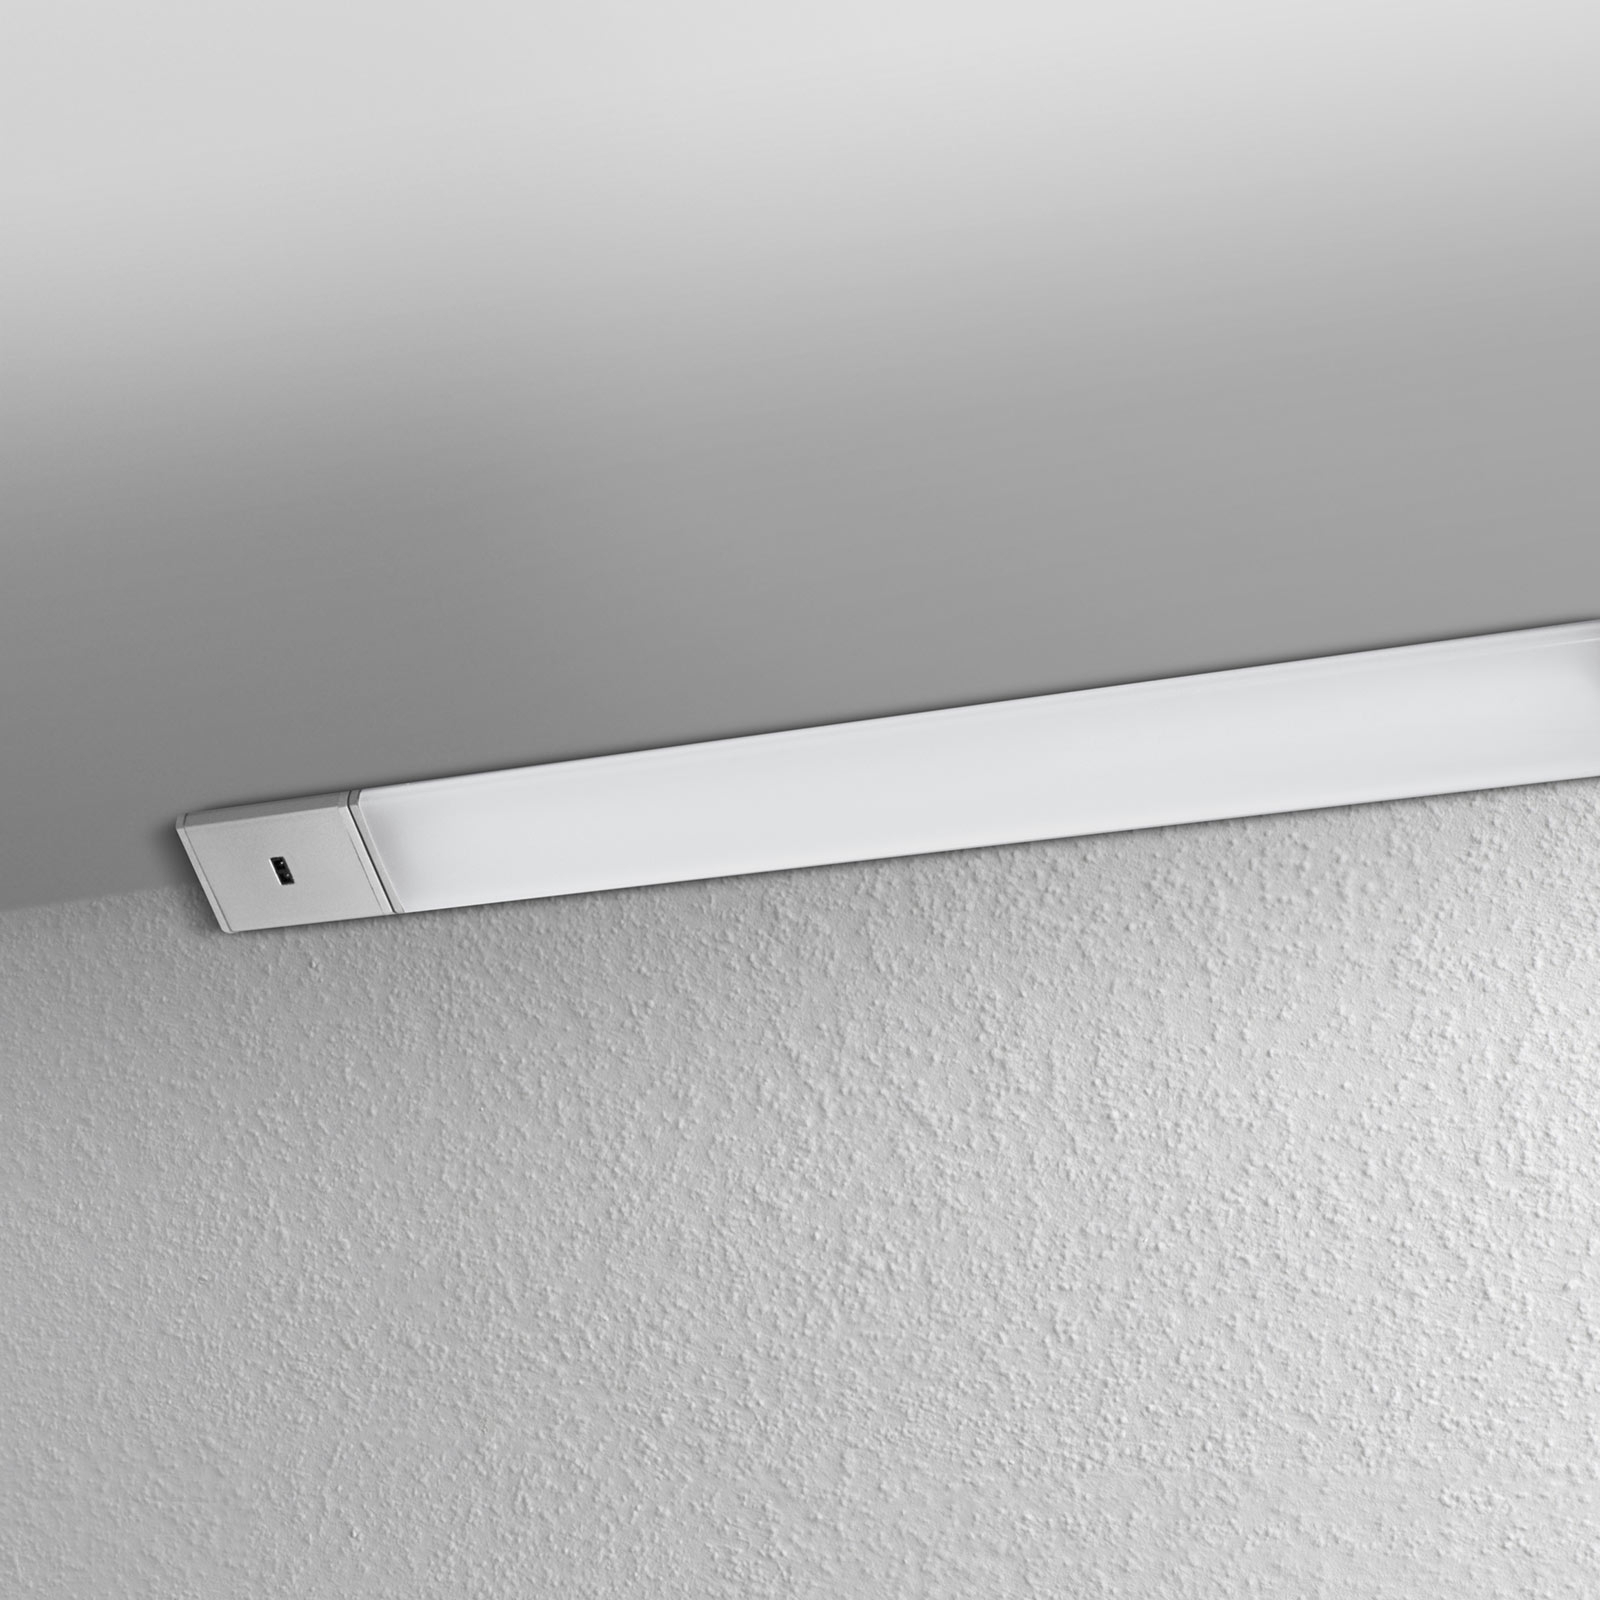 LEDVANCE Cabinet Corner LED-lampe til underskap 55 cm